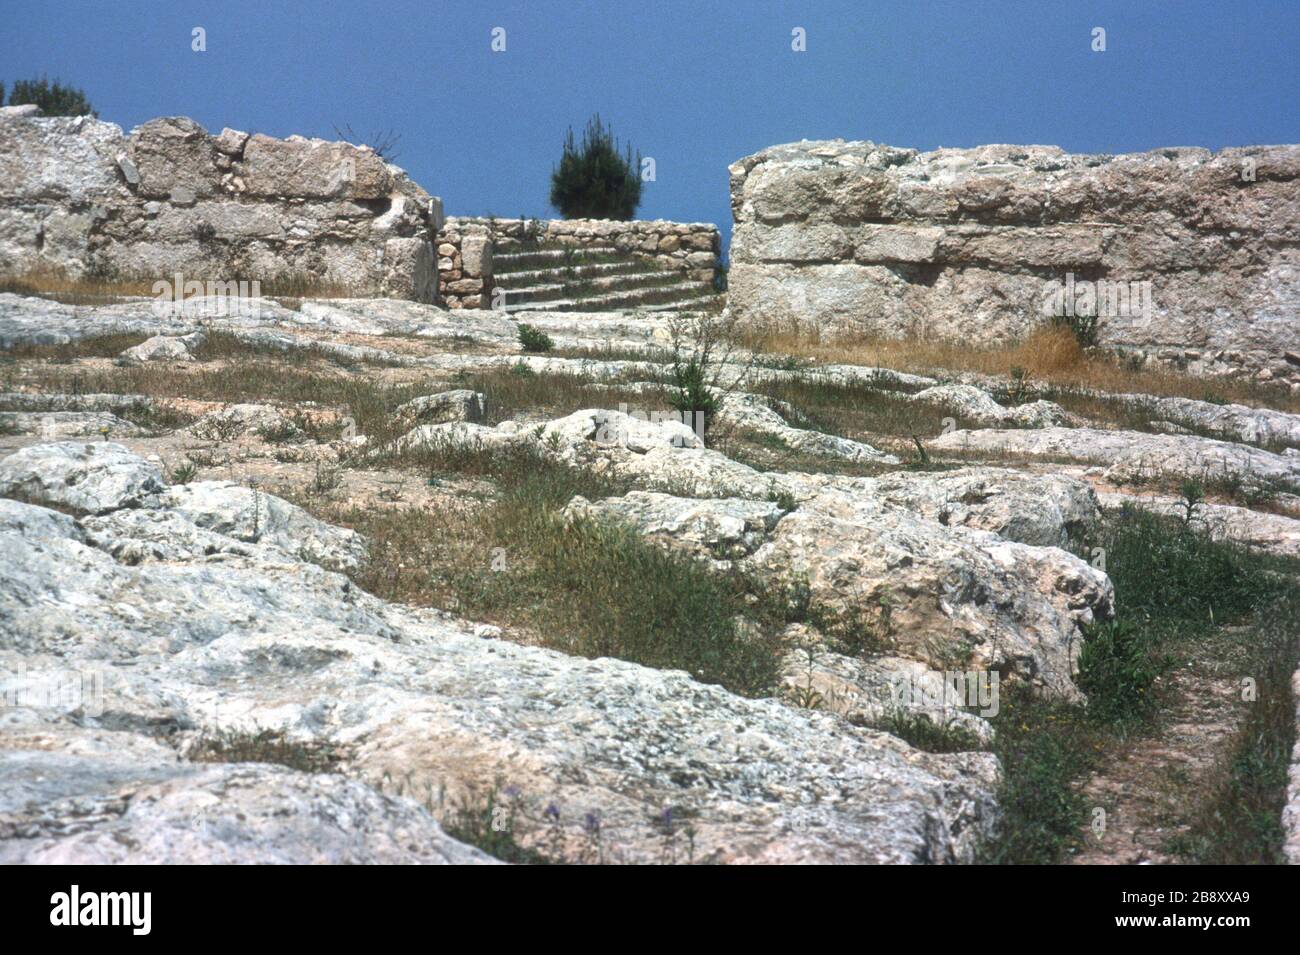 Resti dello spettacolare palazzo in cima alla scogliera di Vouni nel nord di Cipro. Costruita intorno al 500 a.C., mentre l'area era sotto il controllo persiano, fu successivamente rilevata dai greci. Intorno al 400 a.C. il sito fu recuperato dai Persiani dopo che il palazzo fu distrutto in un incendio. Foto Stock